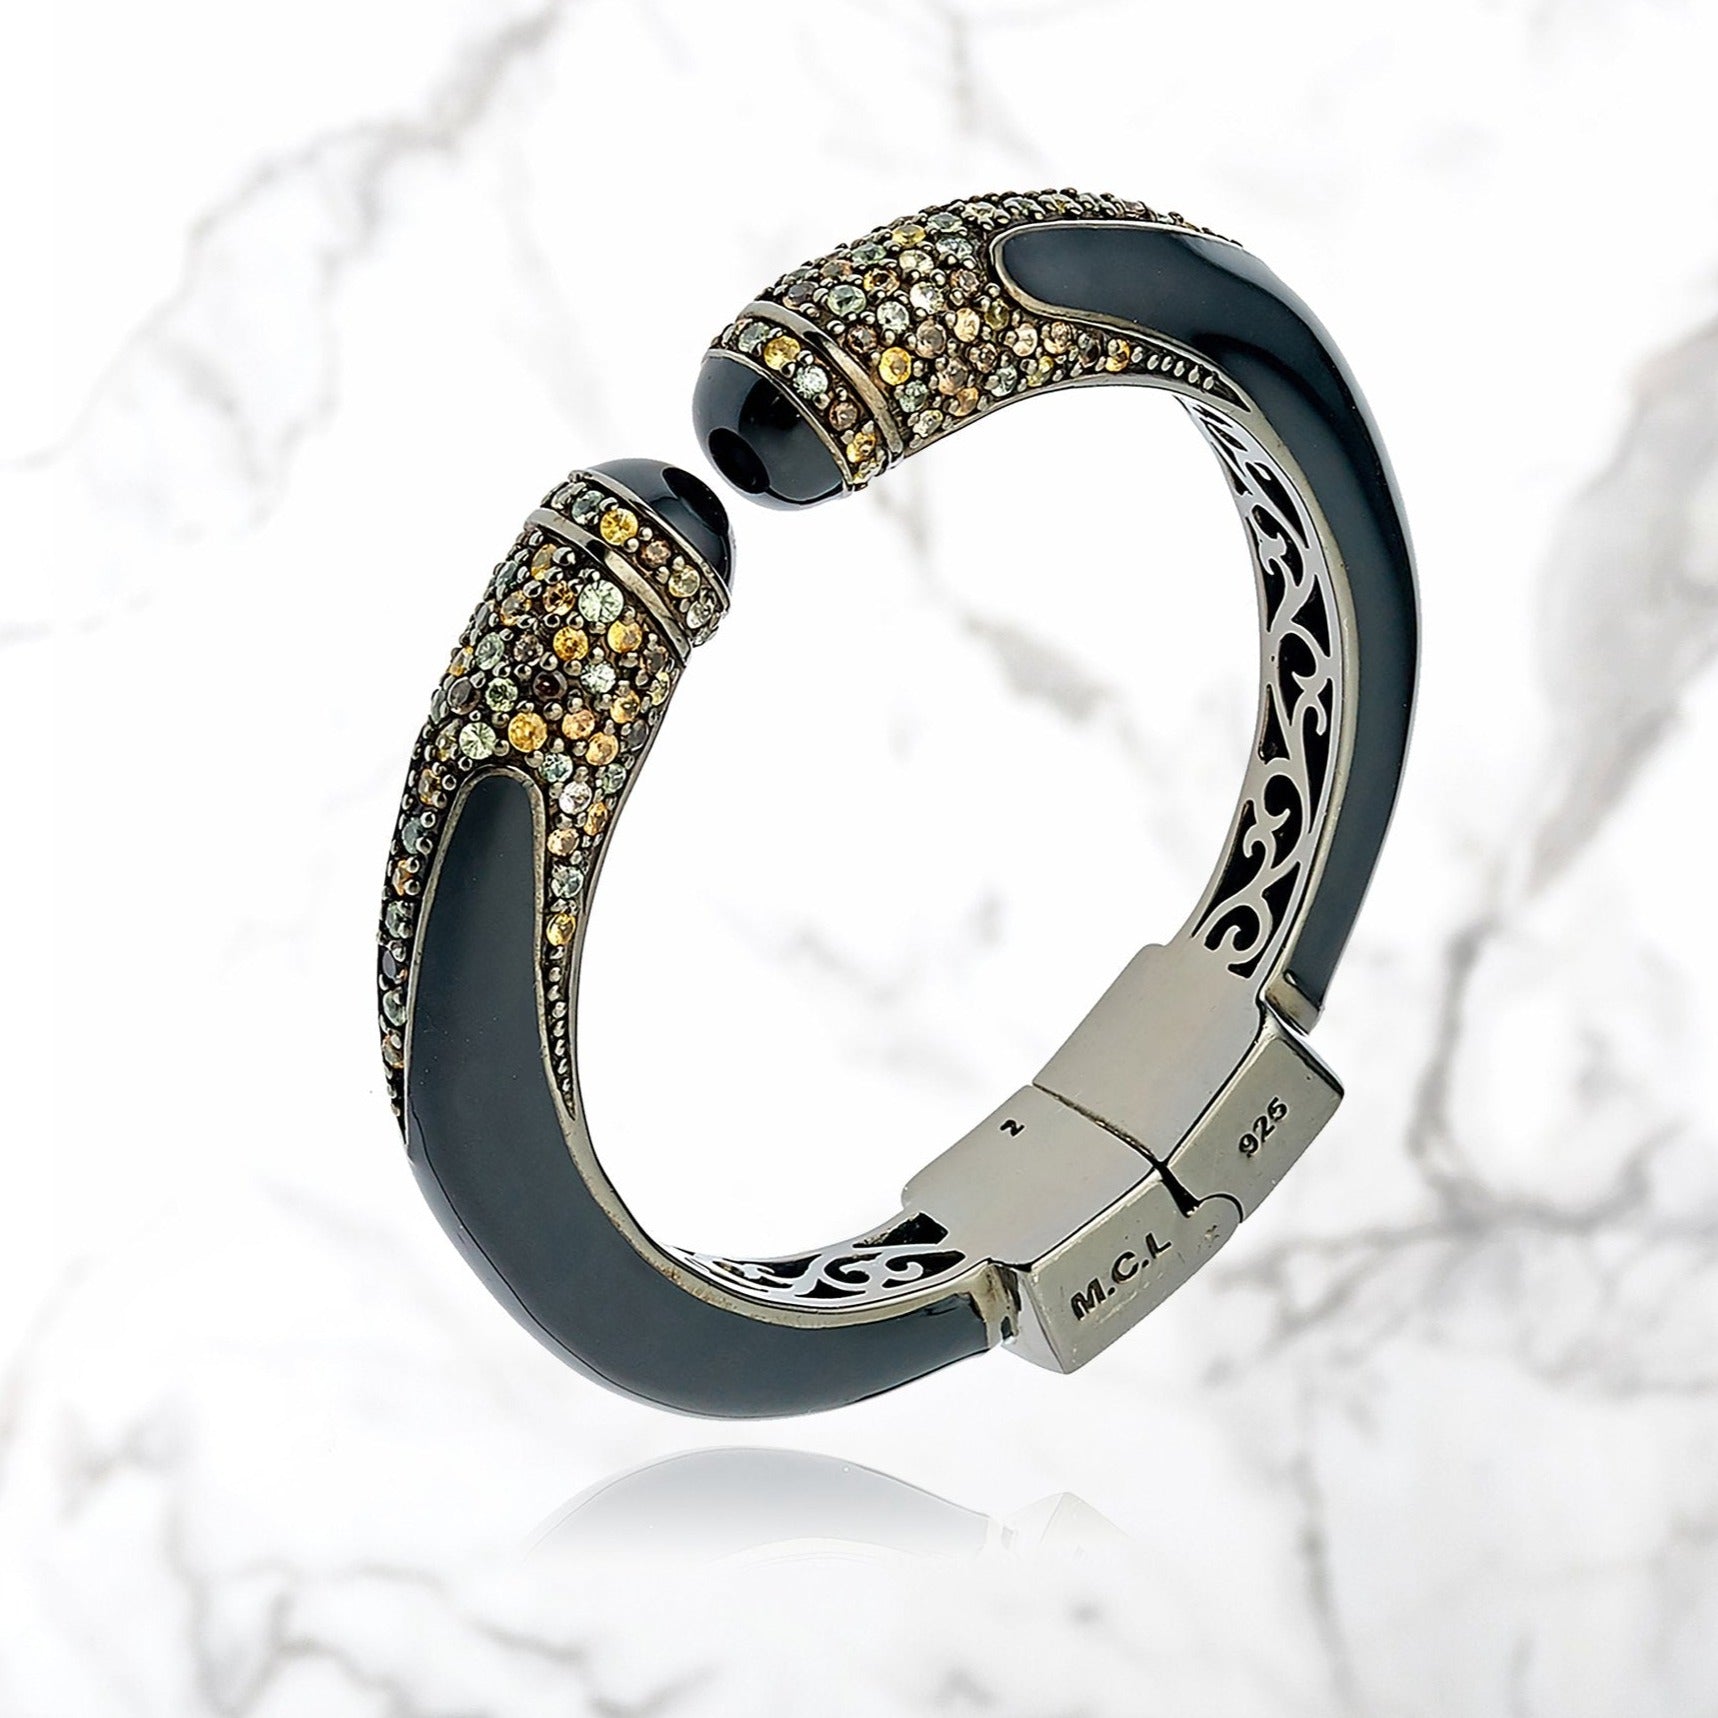 MCL Design sapphire bracelet